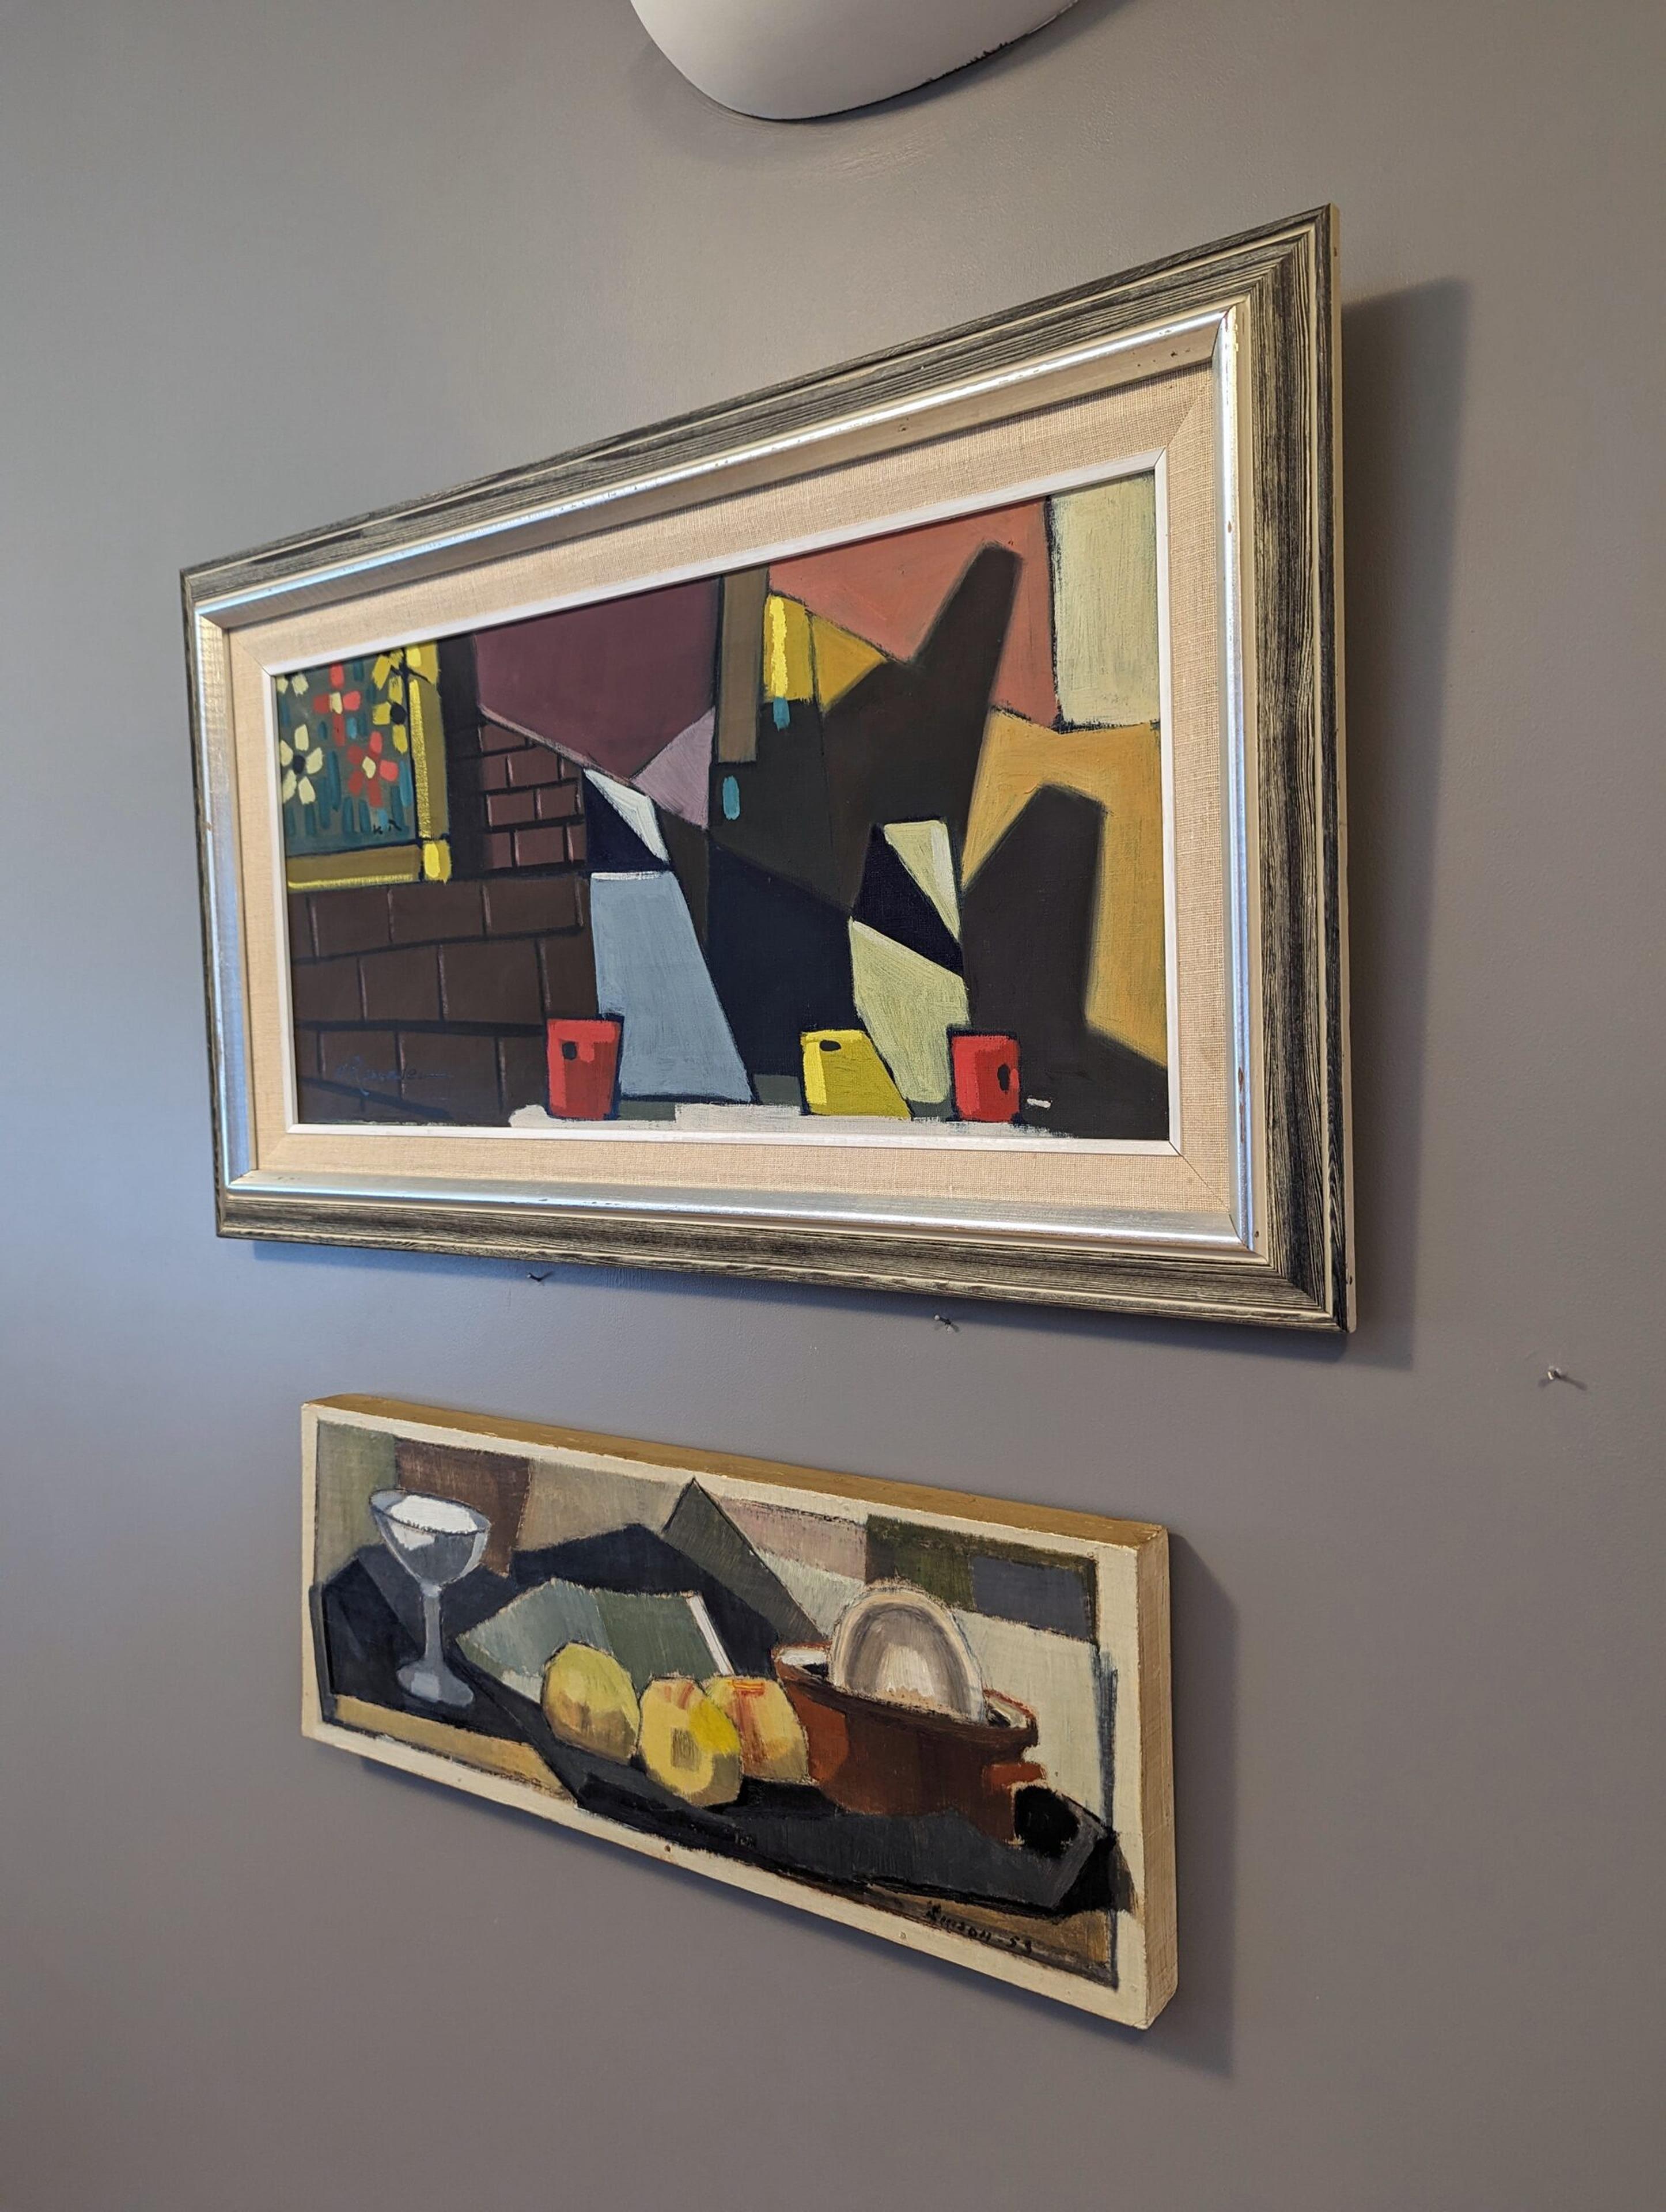 JUGS CUBISTES
Huile sur toile
Dimensions : 41,5 x 71,5 cm (cadre compris)

Une composition moderniste riche et vivante, peinte à l'huile sur toile.

Avec une myriade de couleurs audacieuses et frappantes dans une série de formes géométriques, nous